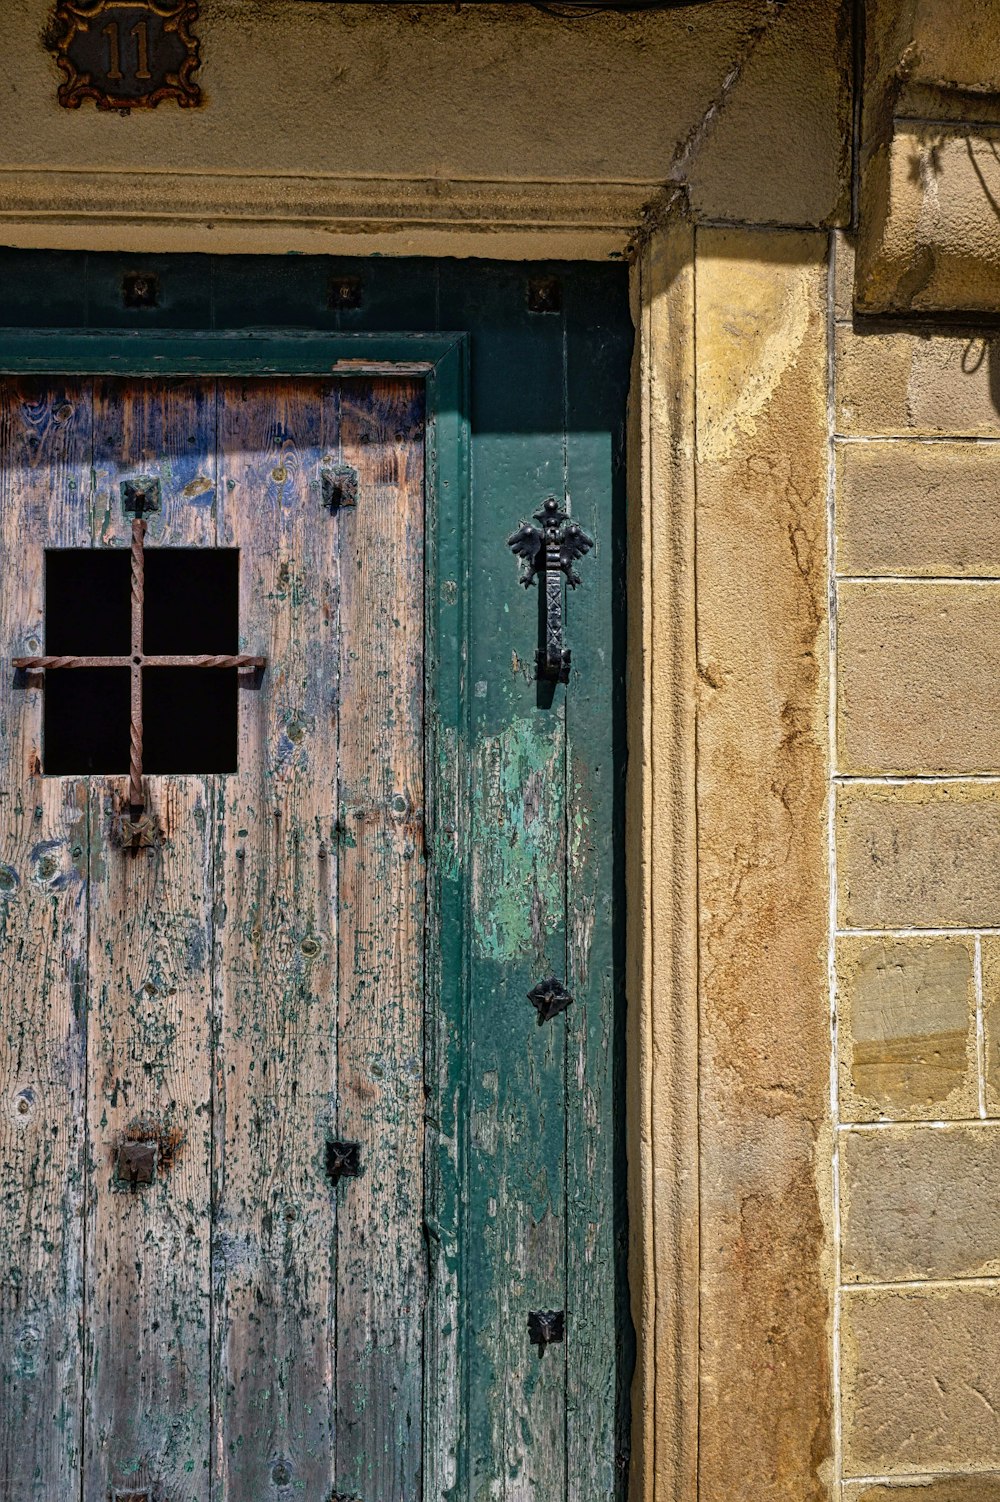 closed green and brown wooden door panel